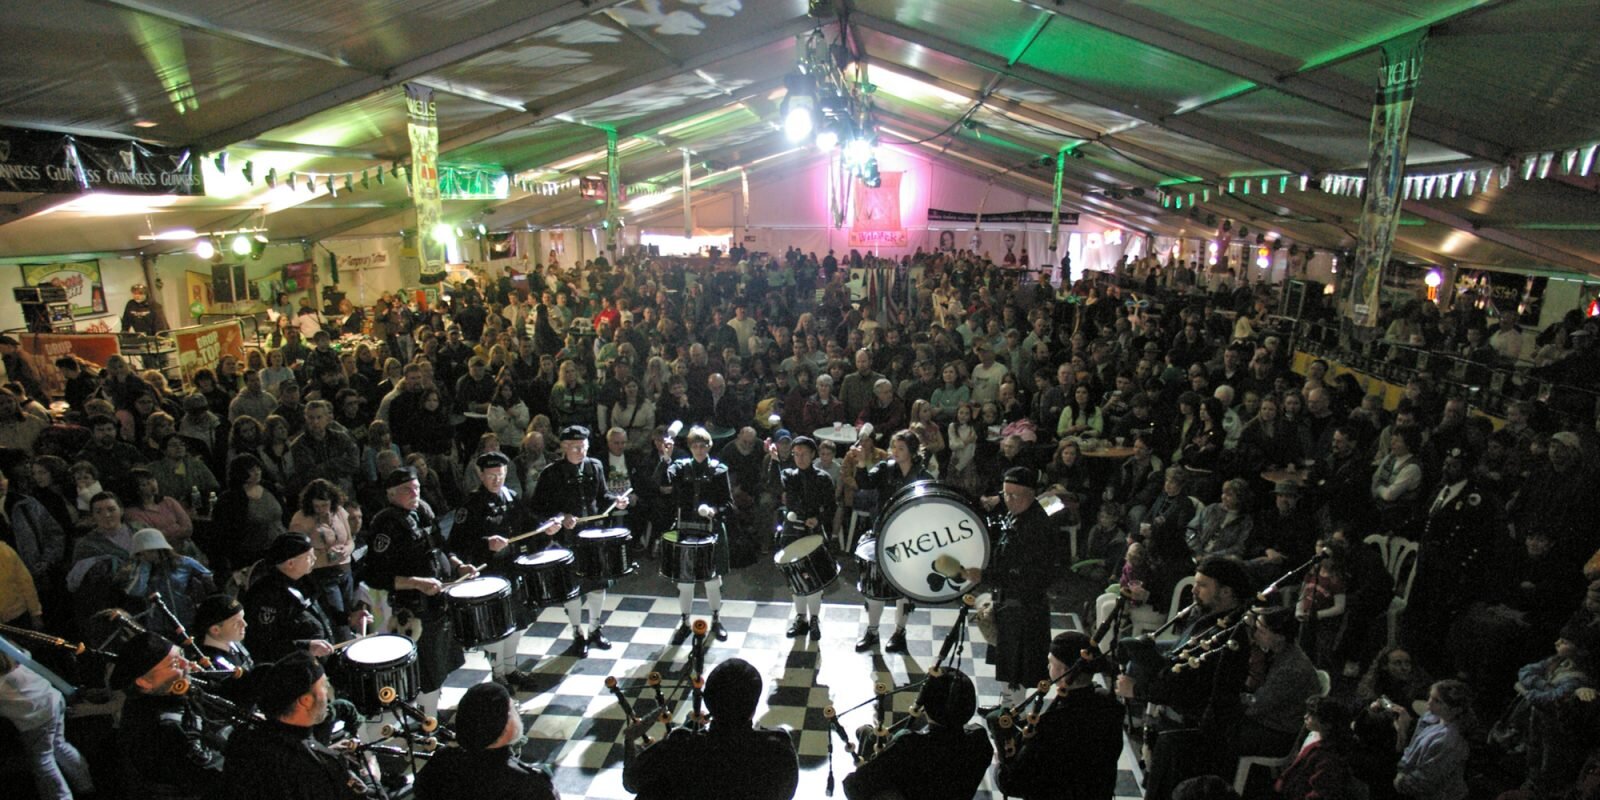 Kells Irish Festival